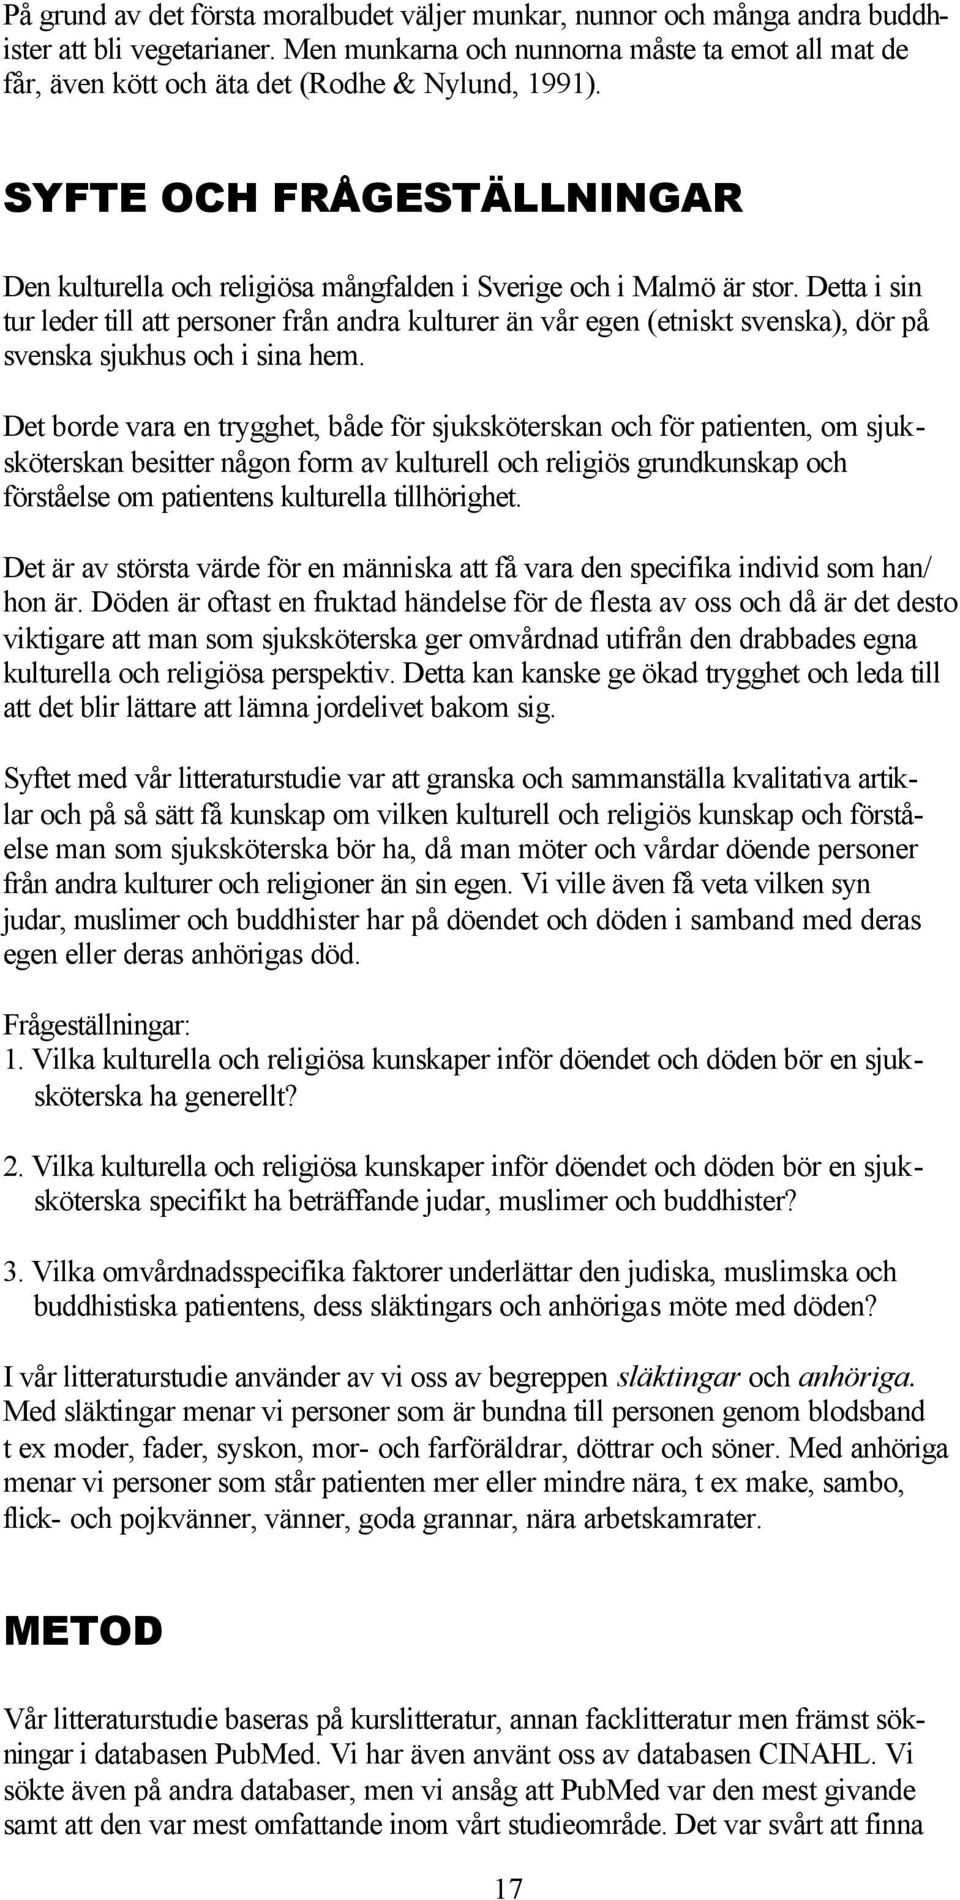 Detta i sin tur leder till att personer från andra kulturer än vår egen (etniskt svenska), dör på svenska sjukhus och i sina hem.